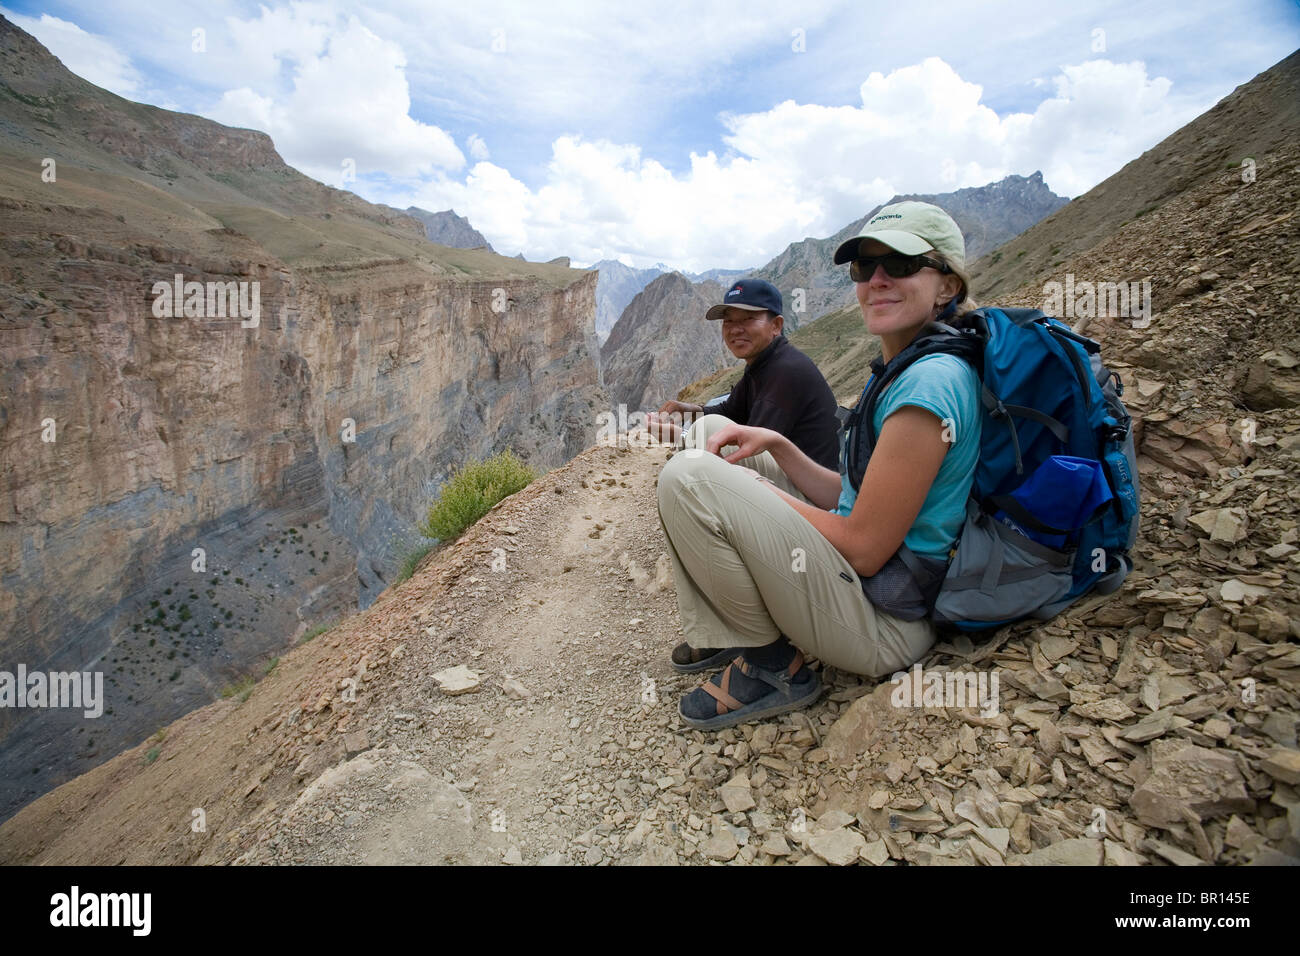 Frau Trekker und Guide ruhen auf Trail in robusten und trocknen Zanskar Gebirge im Norden Indiens während der Wanderung. Stockfoto